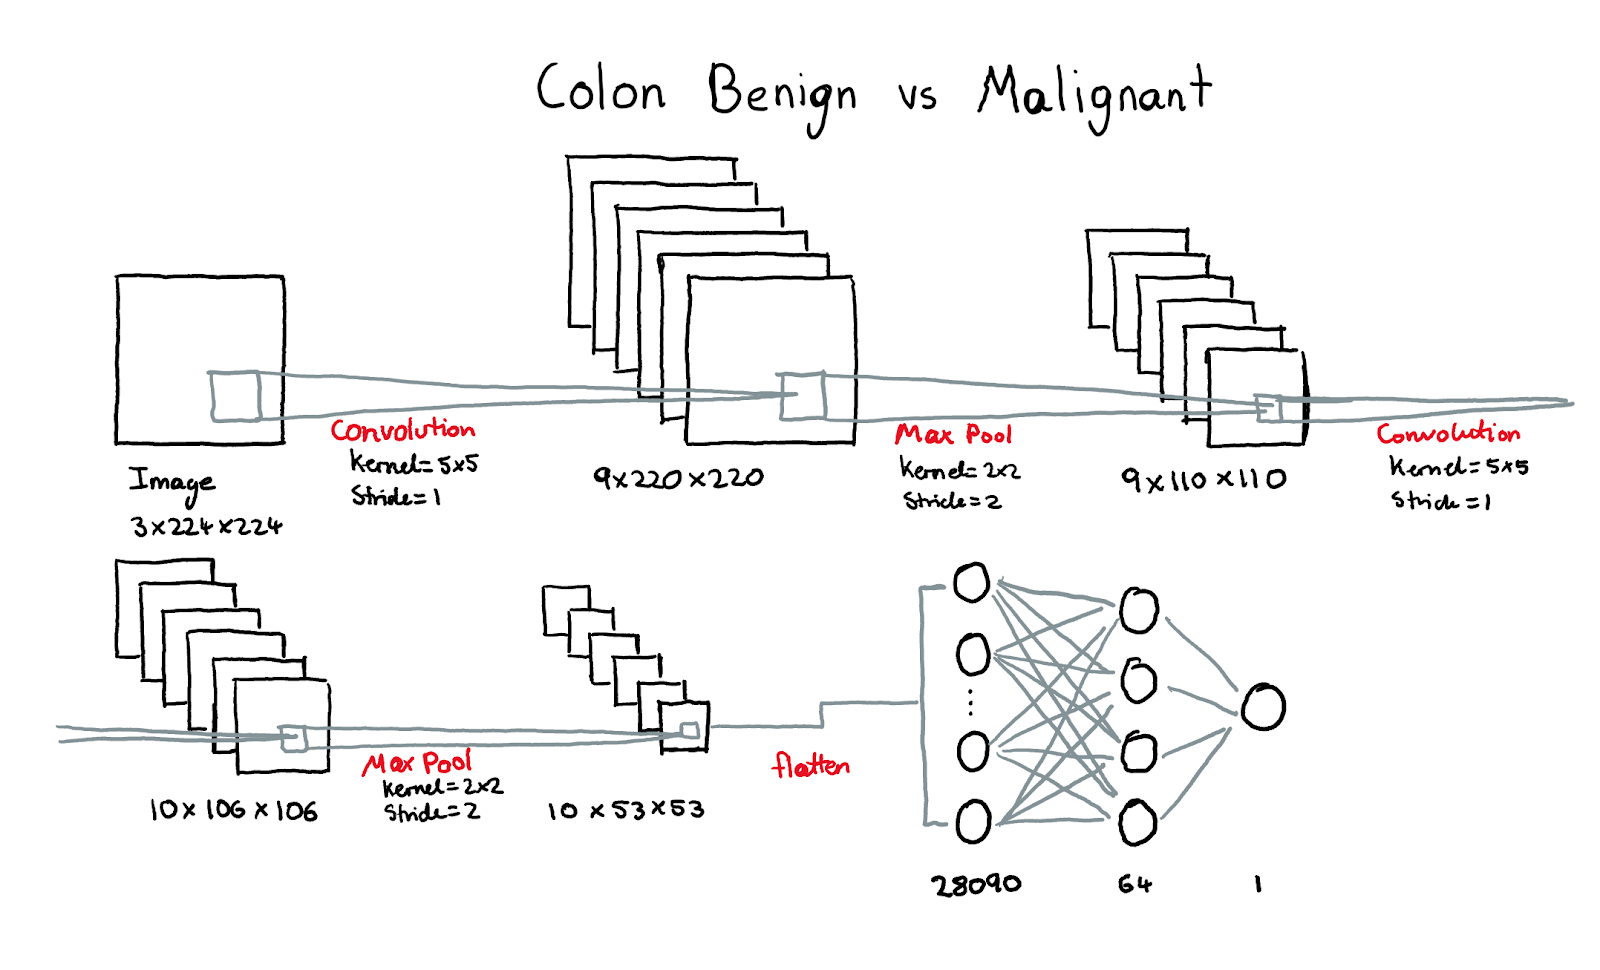 CNN #3 - Colon Benign vs. Malignant Architecture